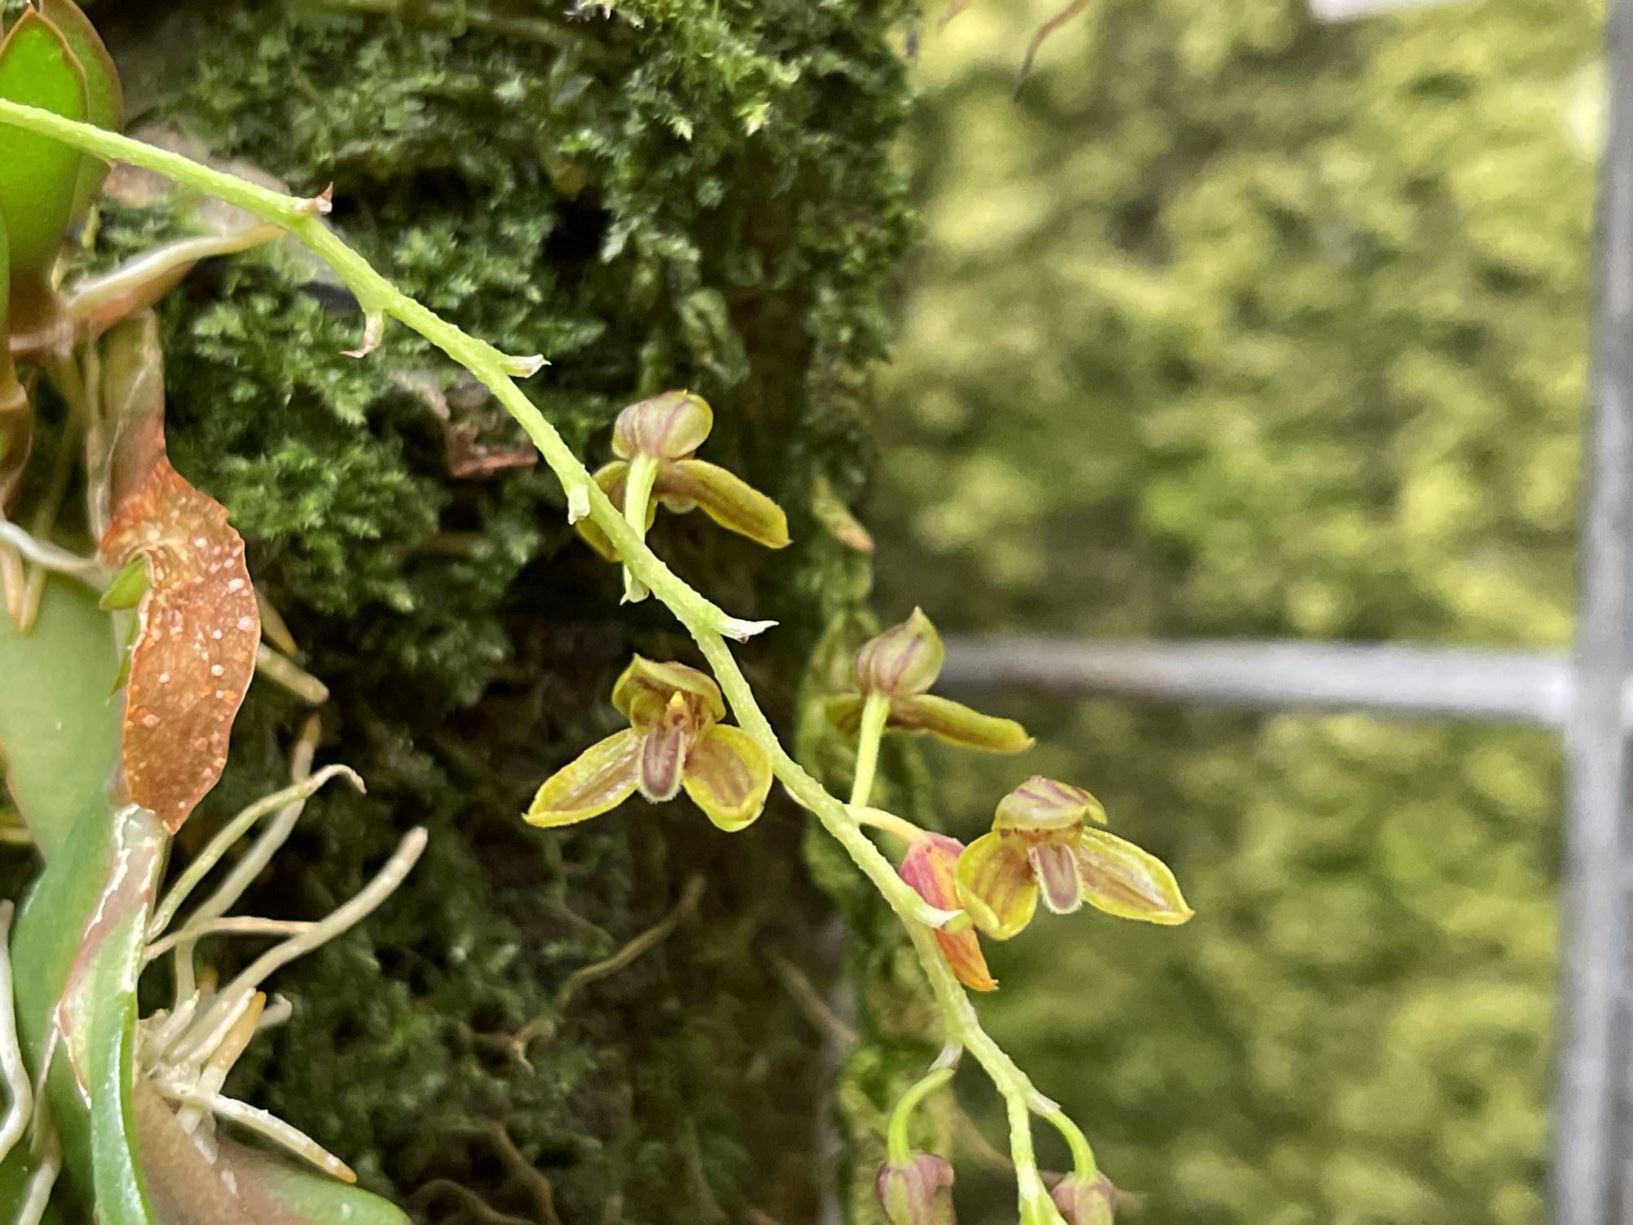 Bulbophyllum orbiculare subsp. cassideum